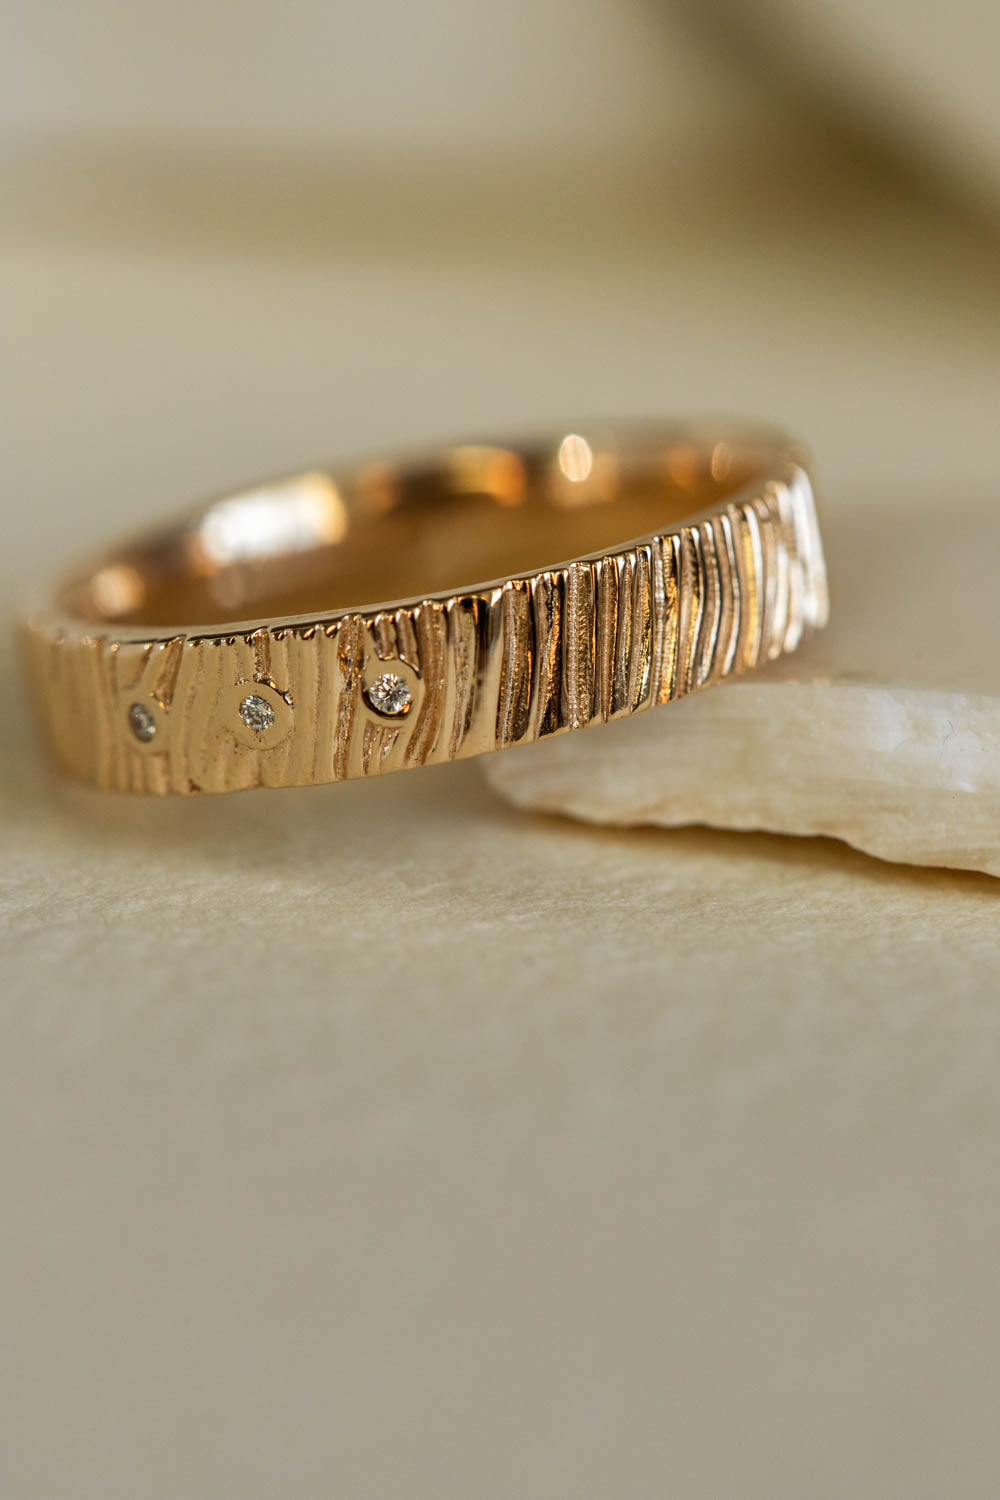 Wood textured wedding ring with gemstones, 4 mm wedding band - Eden Garden Jewelry™